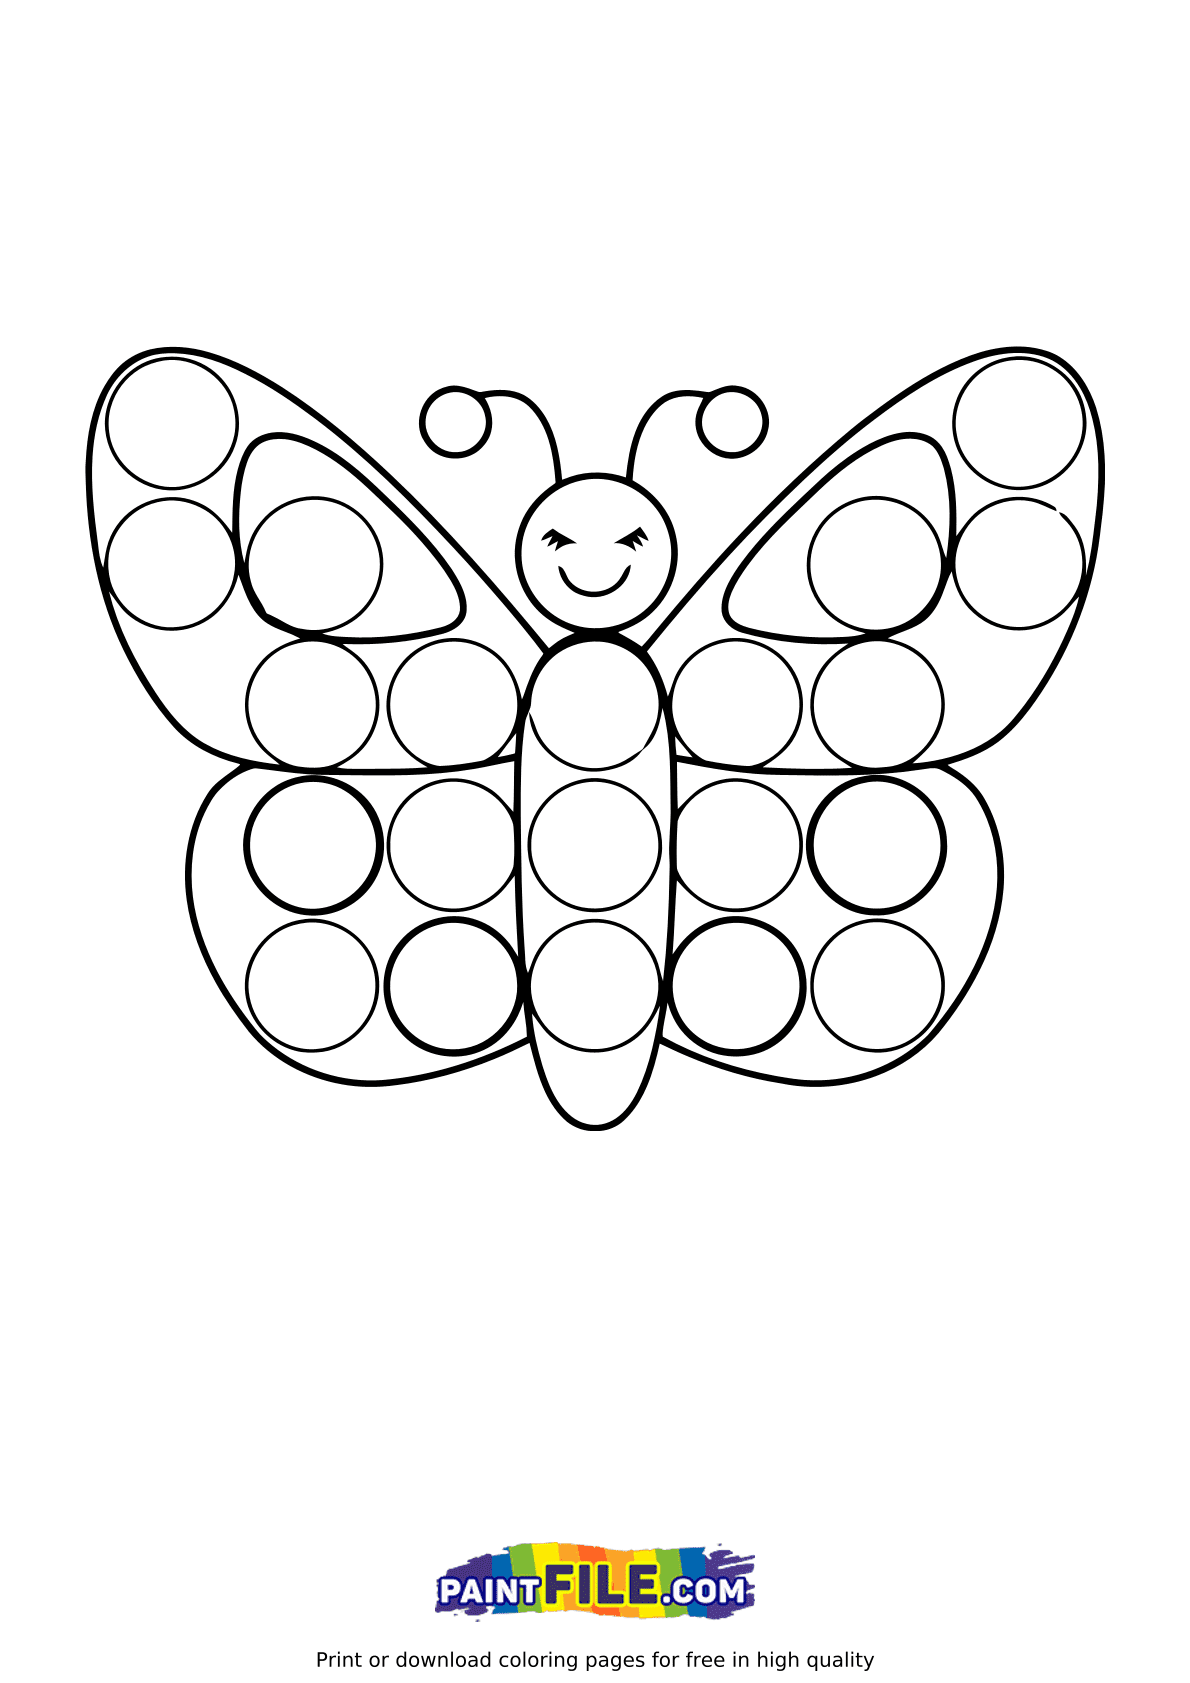 Бабочки для детей 2 3 лет. Бабочка раскраска для детей. Бабочка раскраска для малышей. Шаблоны для пластилинографии для детей. Пальчиковая раскраска бабочка.